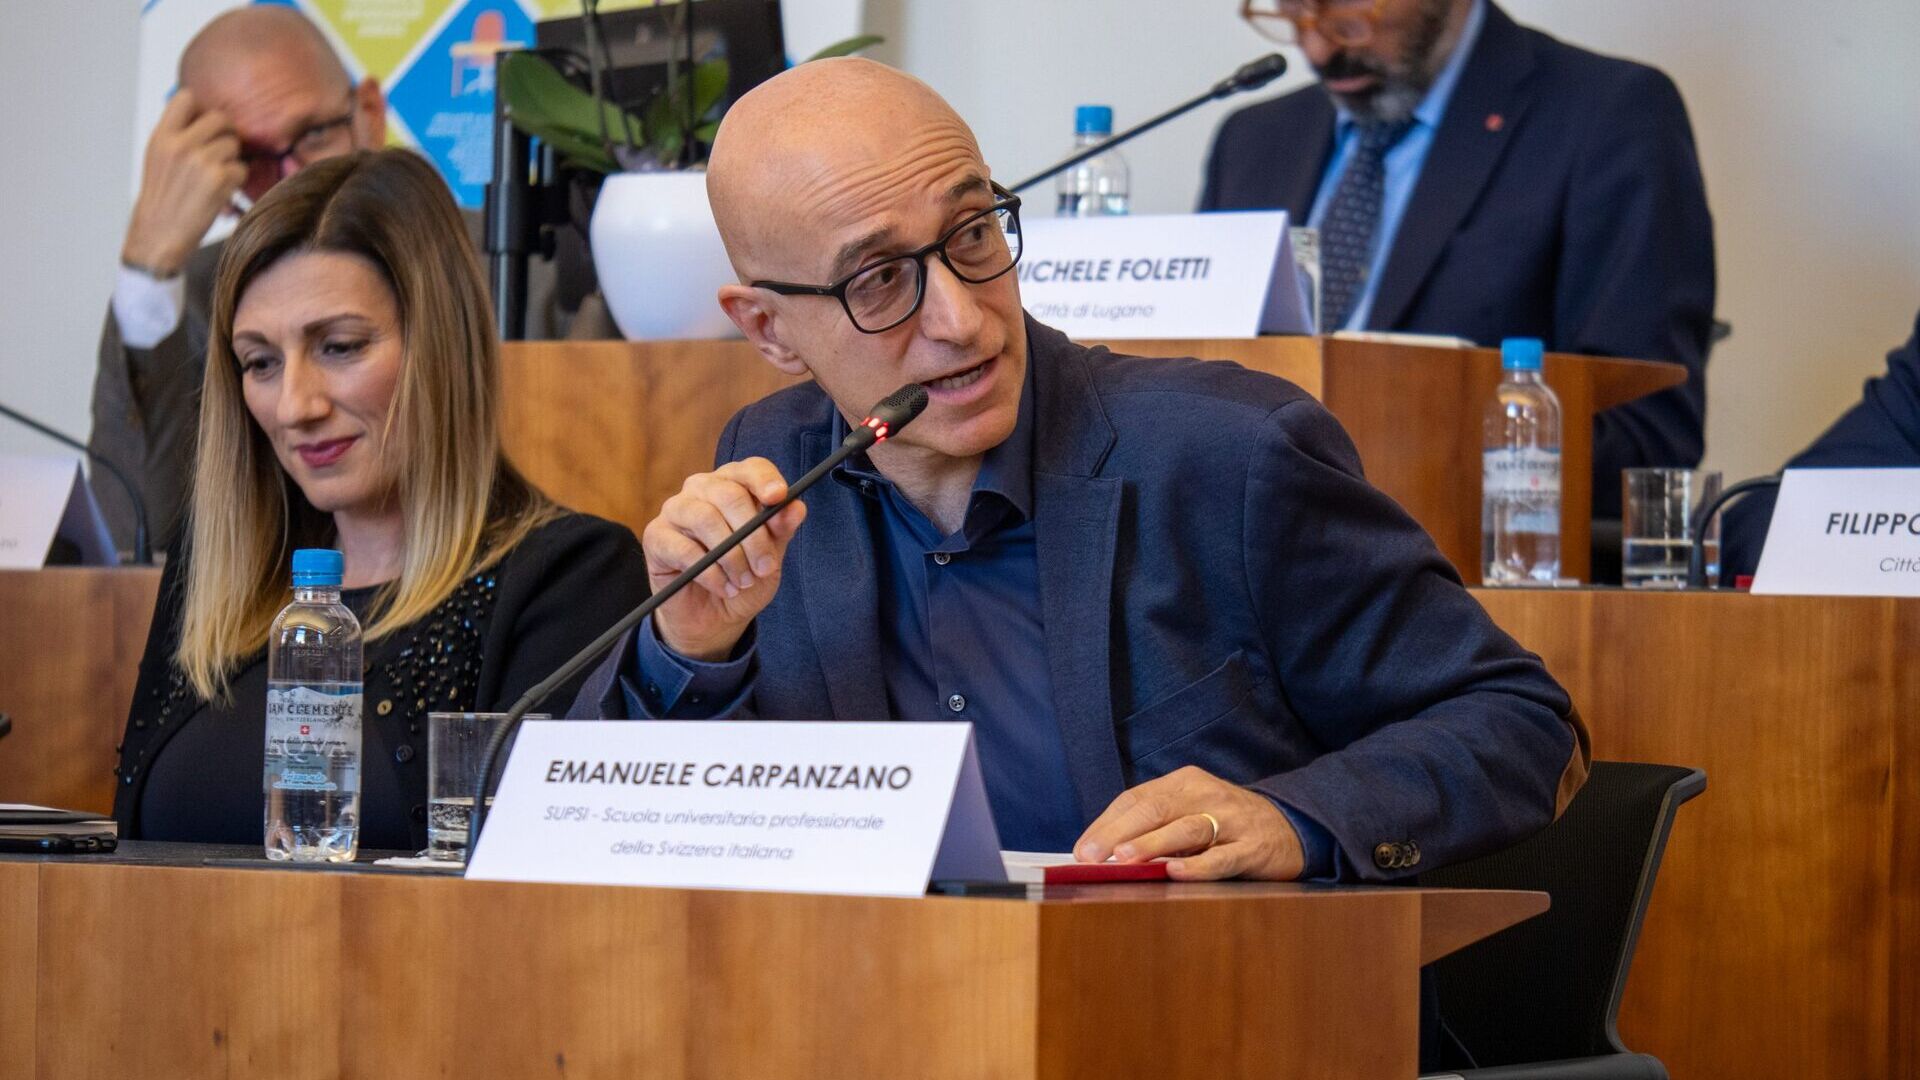 LTCC: Emanuele Carpanzano är chef för forskning, utveckling och kunskapsöverföring vid University of Applied Sciences and Arts i Italienska Schweiz